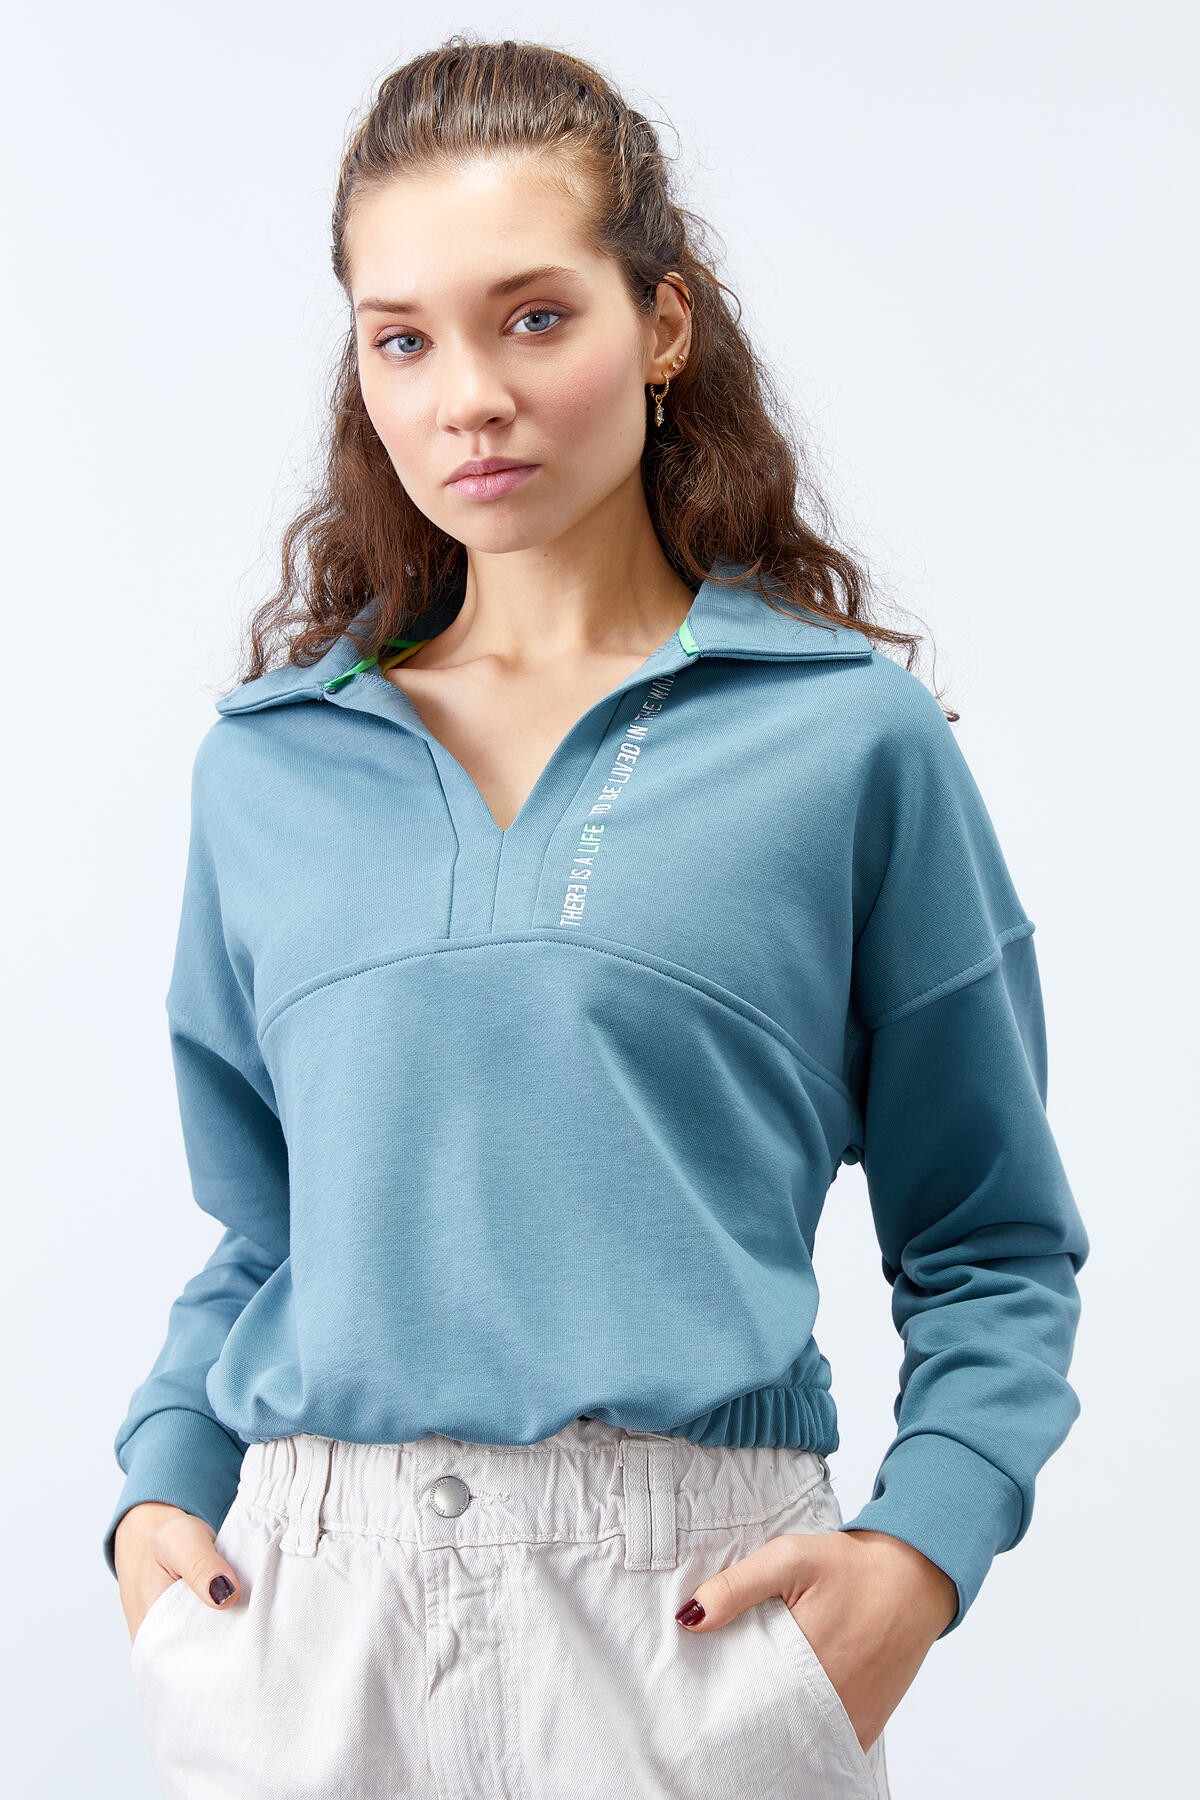 TommyLife - Mint Yeşili Polo Yaka Etek Ucu Büzgülü Kadın Oversize Sweatshirt - 97180